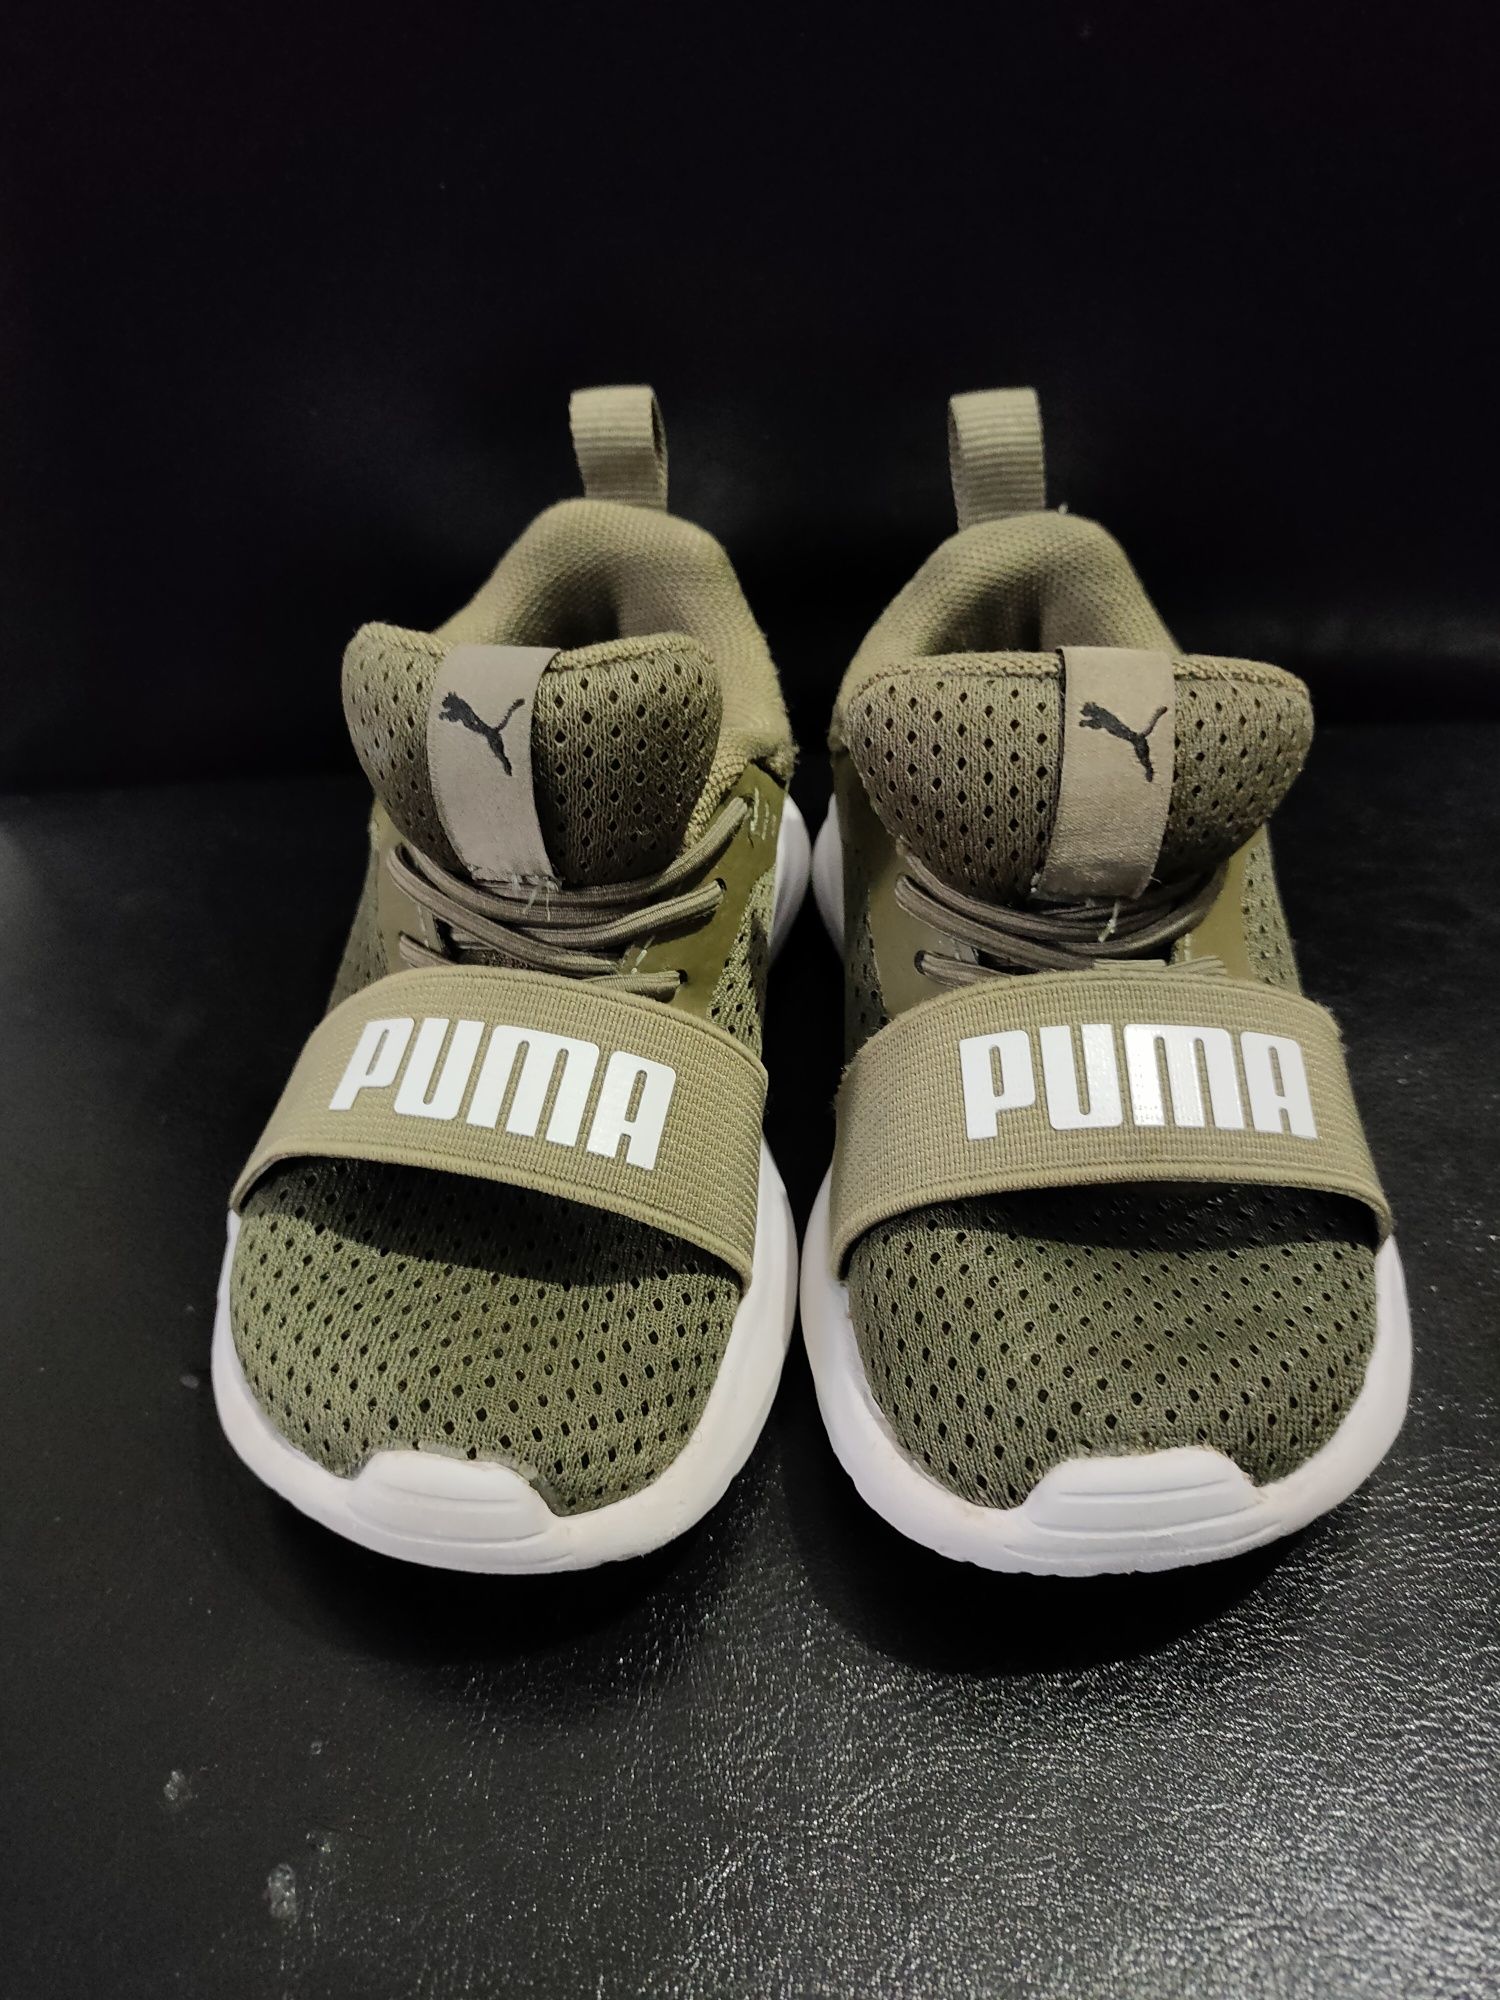 Adidasi Puma copii